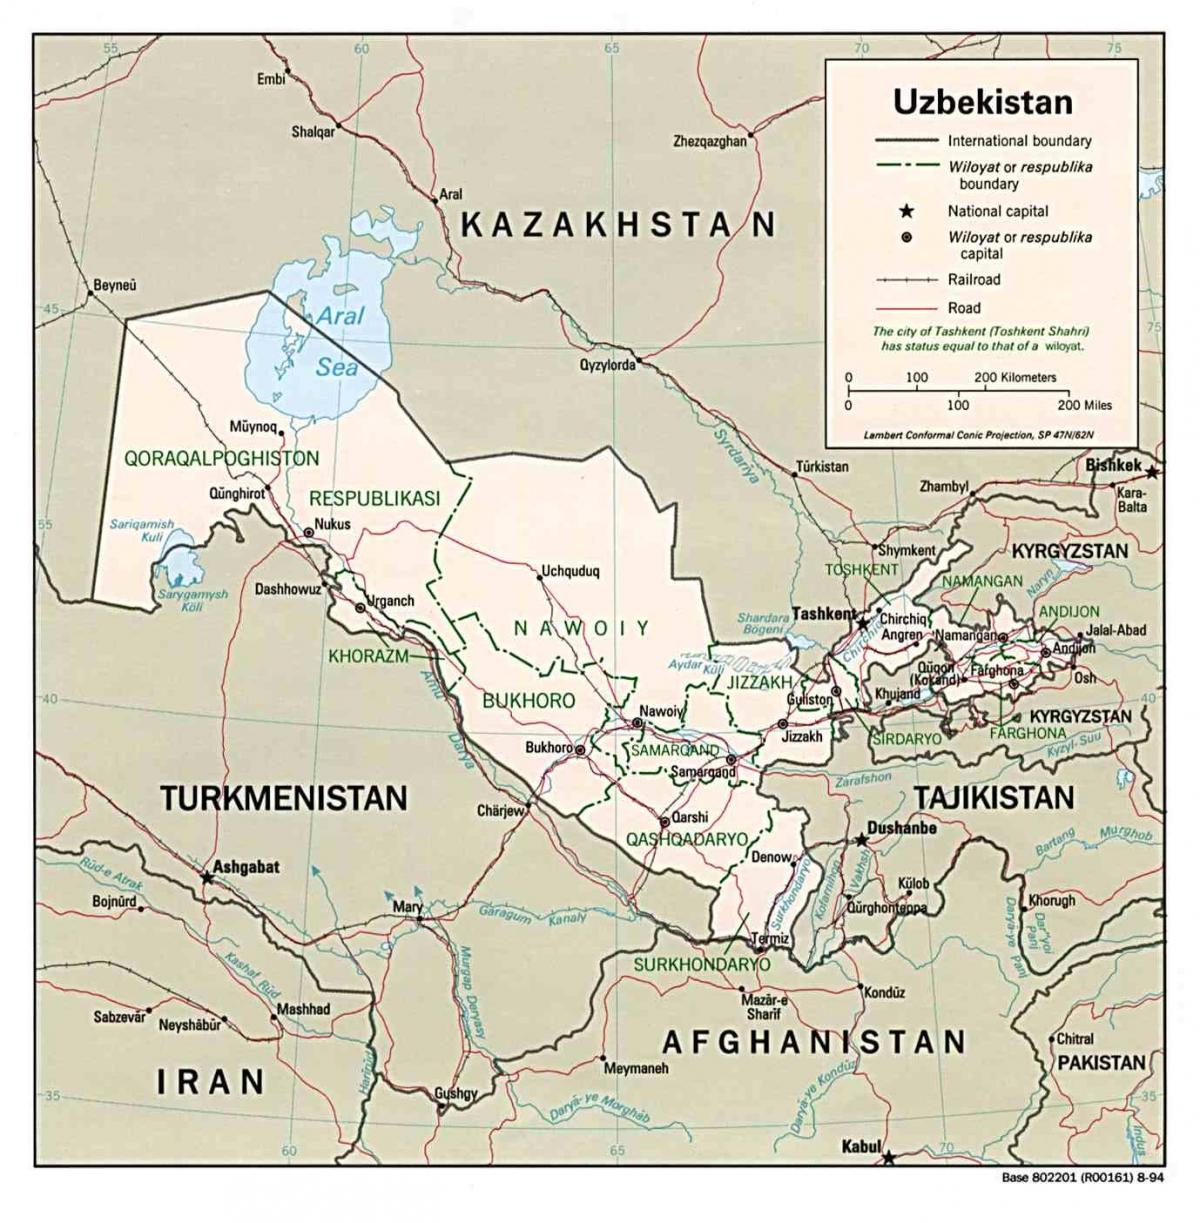 картицу Узбекистана околних земаља